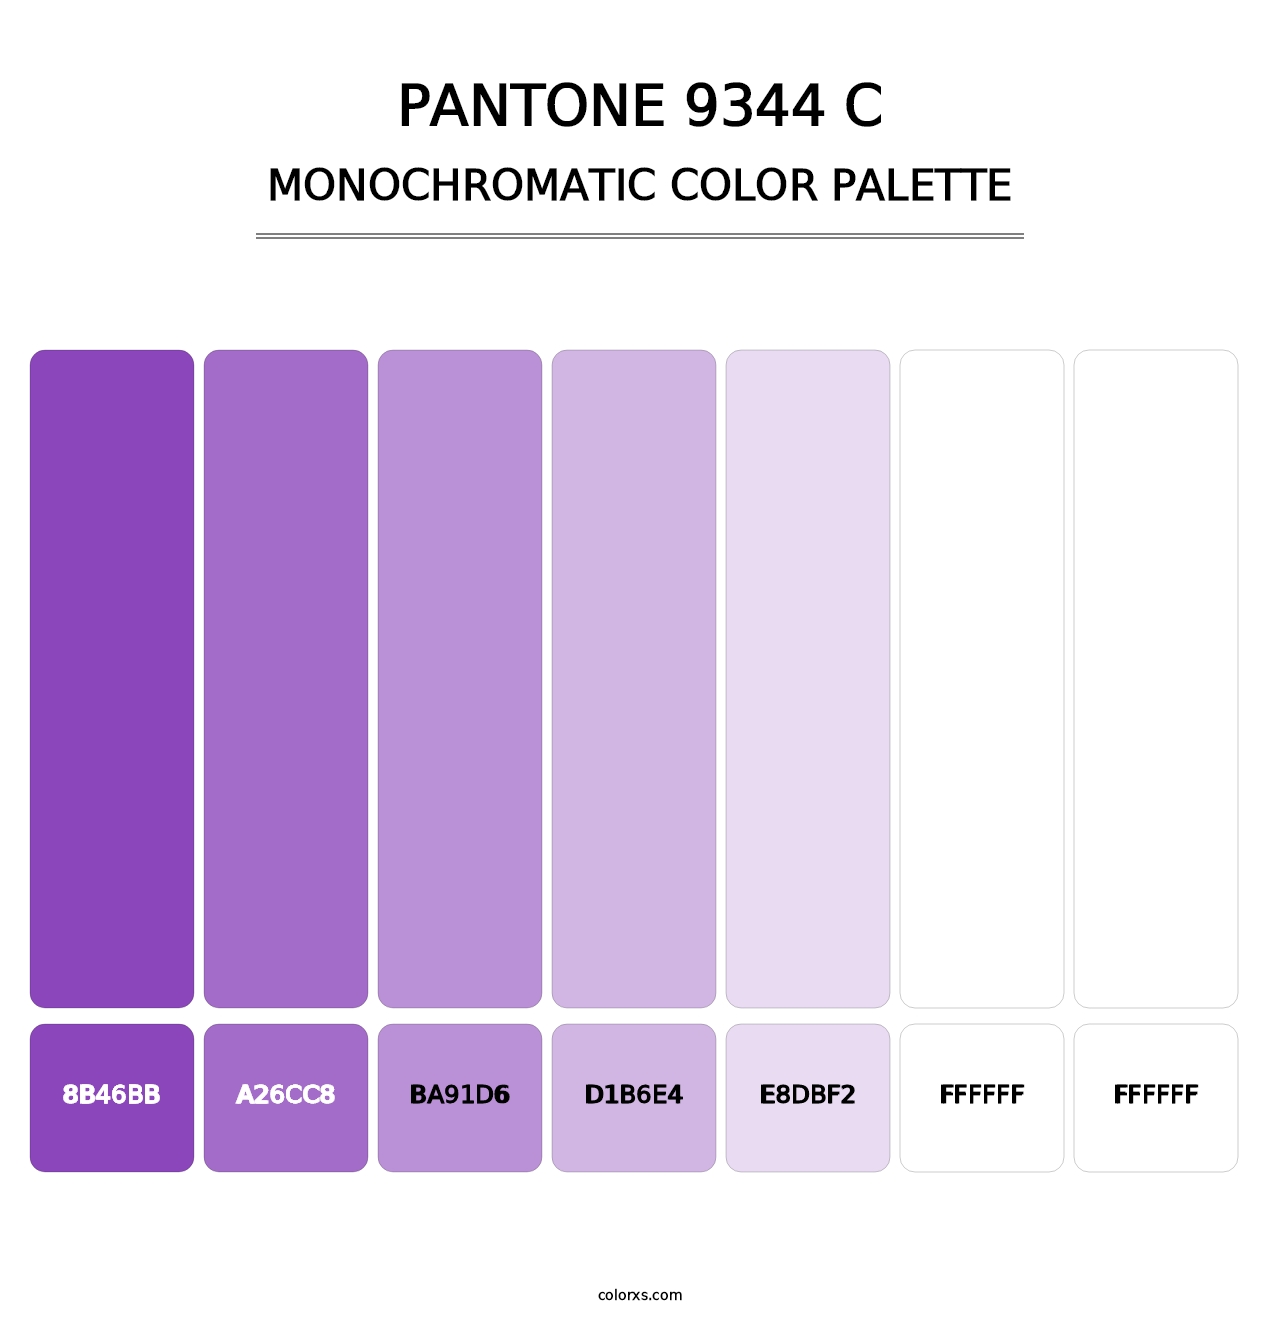 PANTONE 9344 C - Monochromatic Color Palette